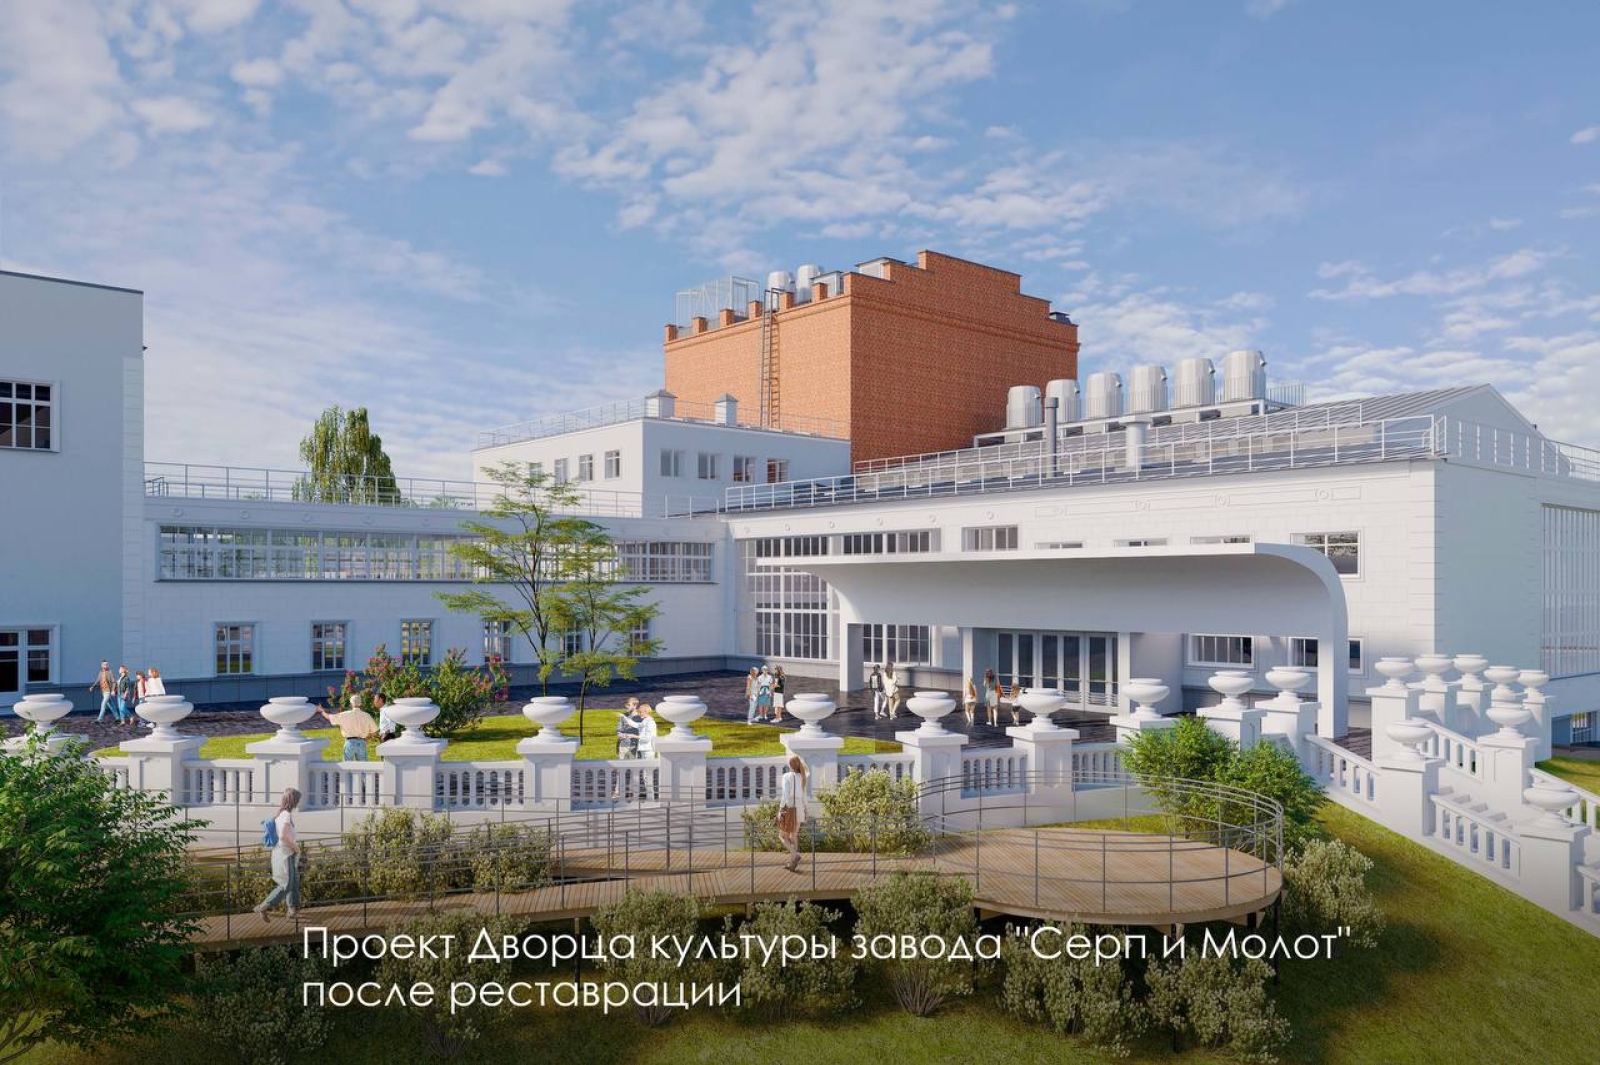 Мэр Москвы рассказал о начале реставрации Дворца культуры завода «Серп и Молот»